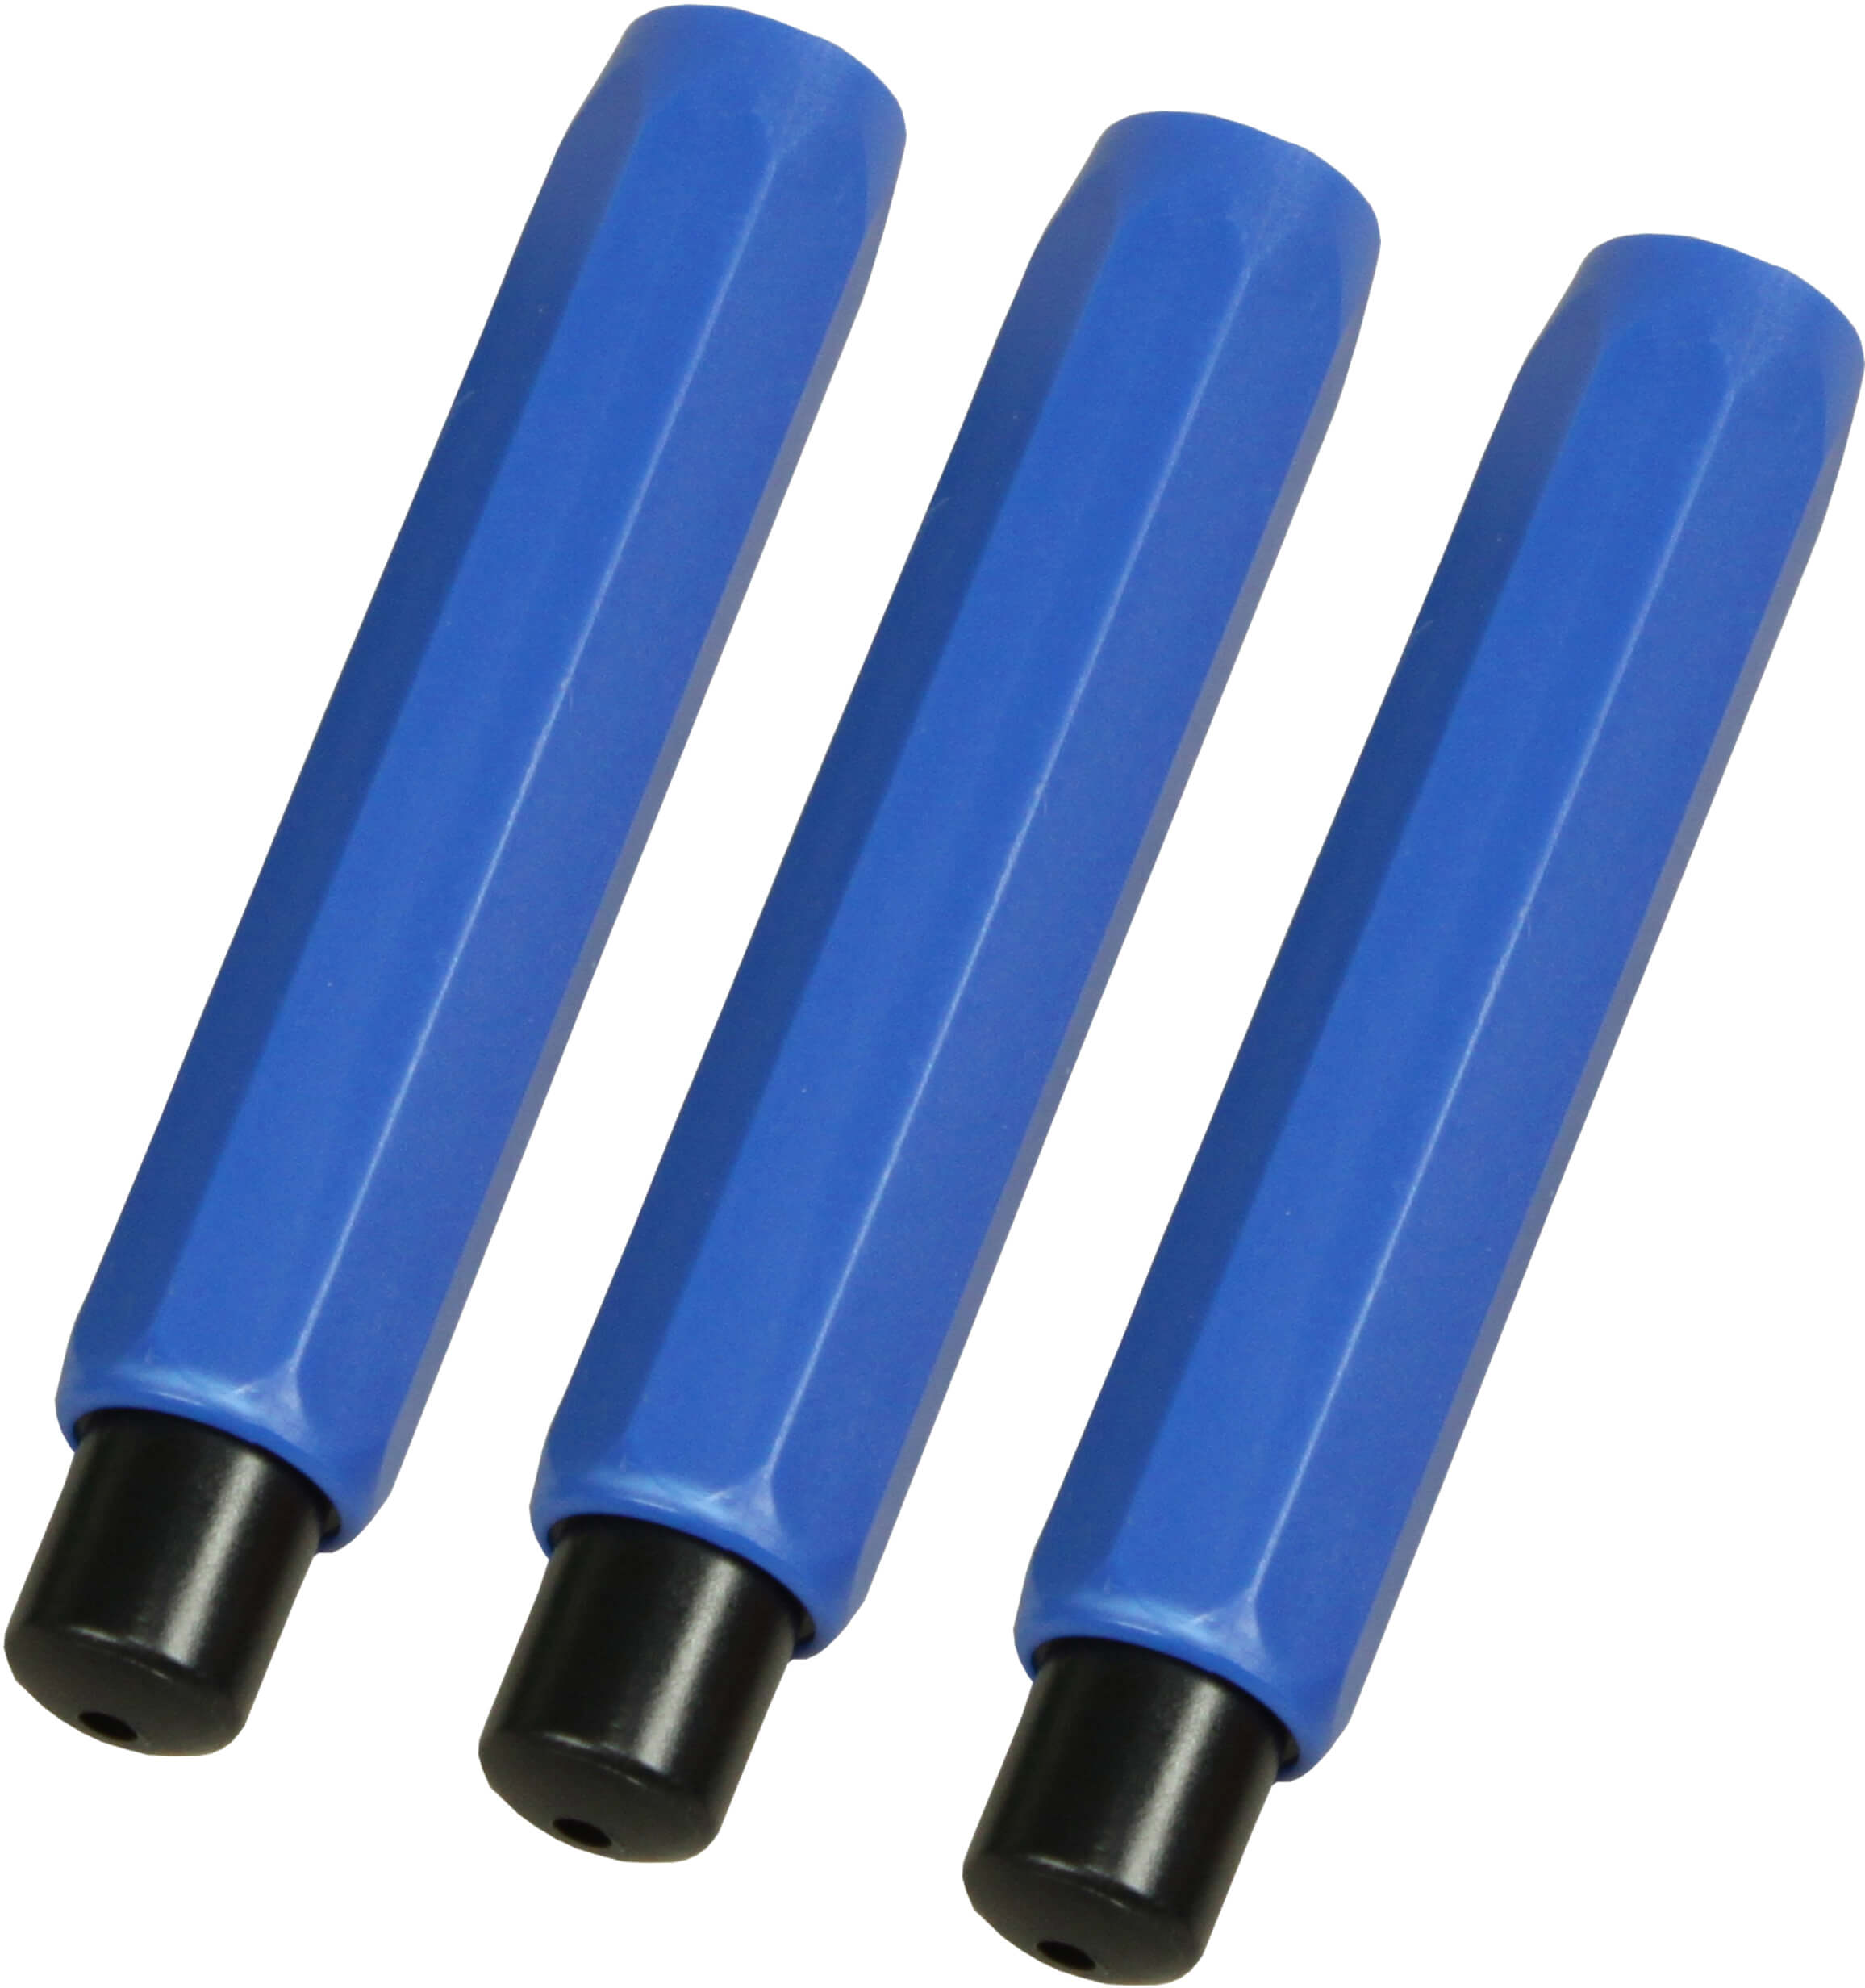 Kreidehalter für Robercolorkreide blau sofort lieferbar | Bestnr. RC1050-BL